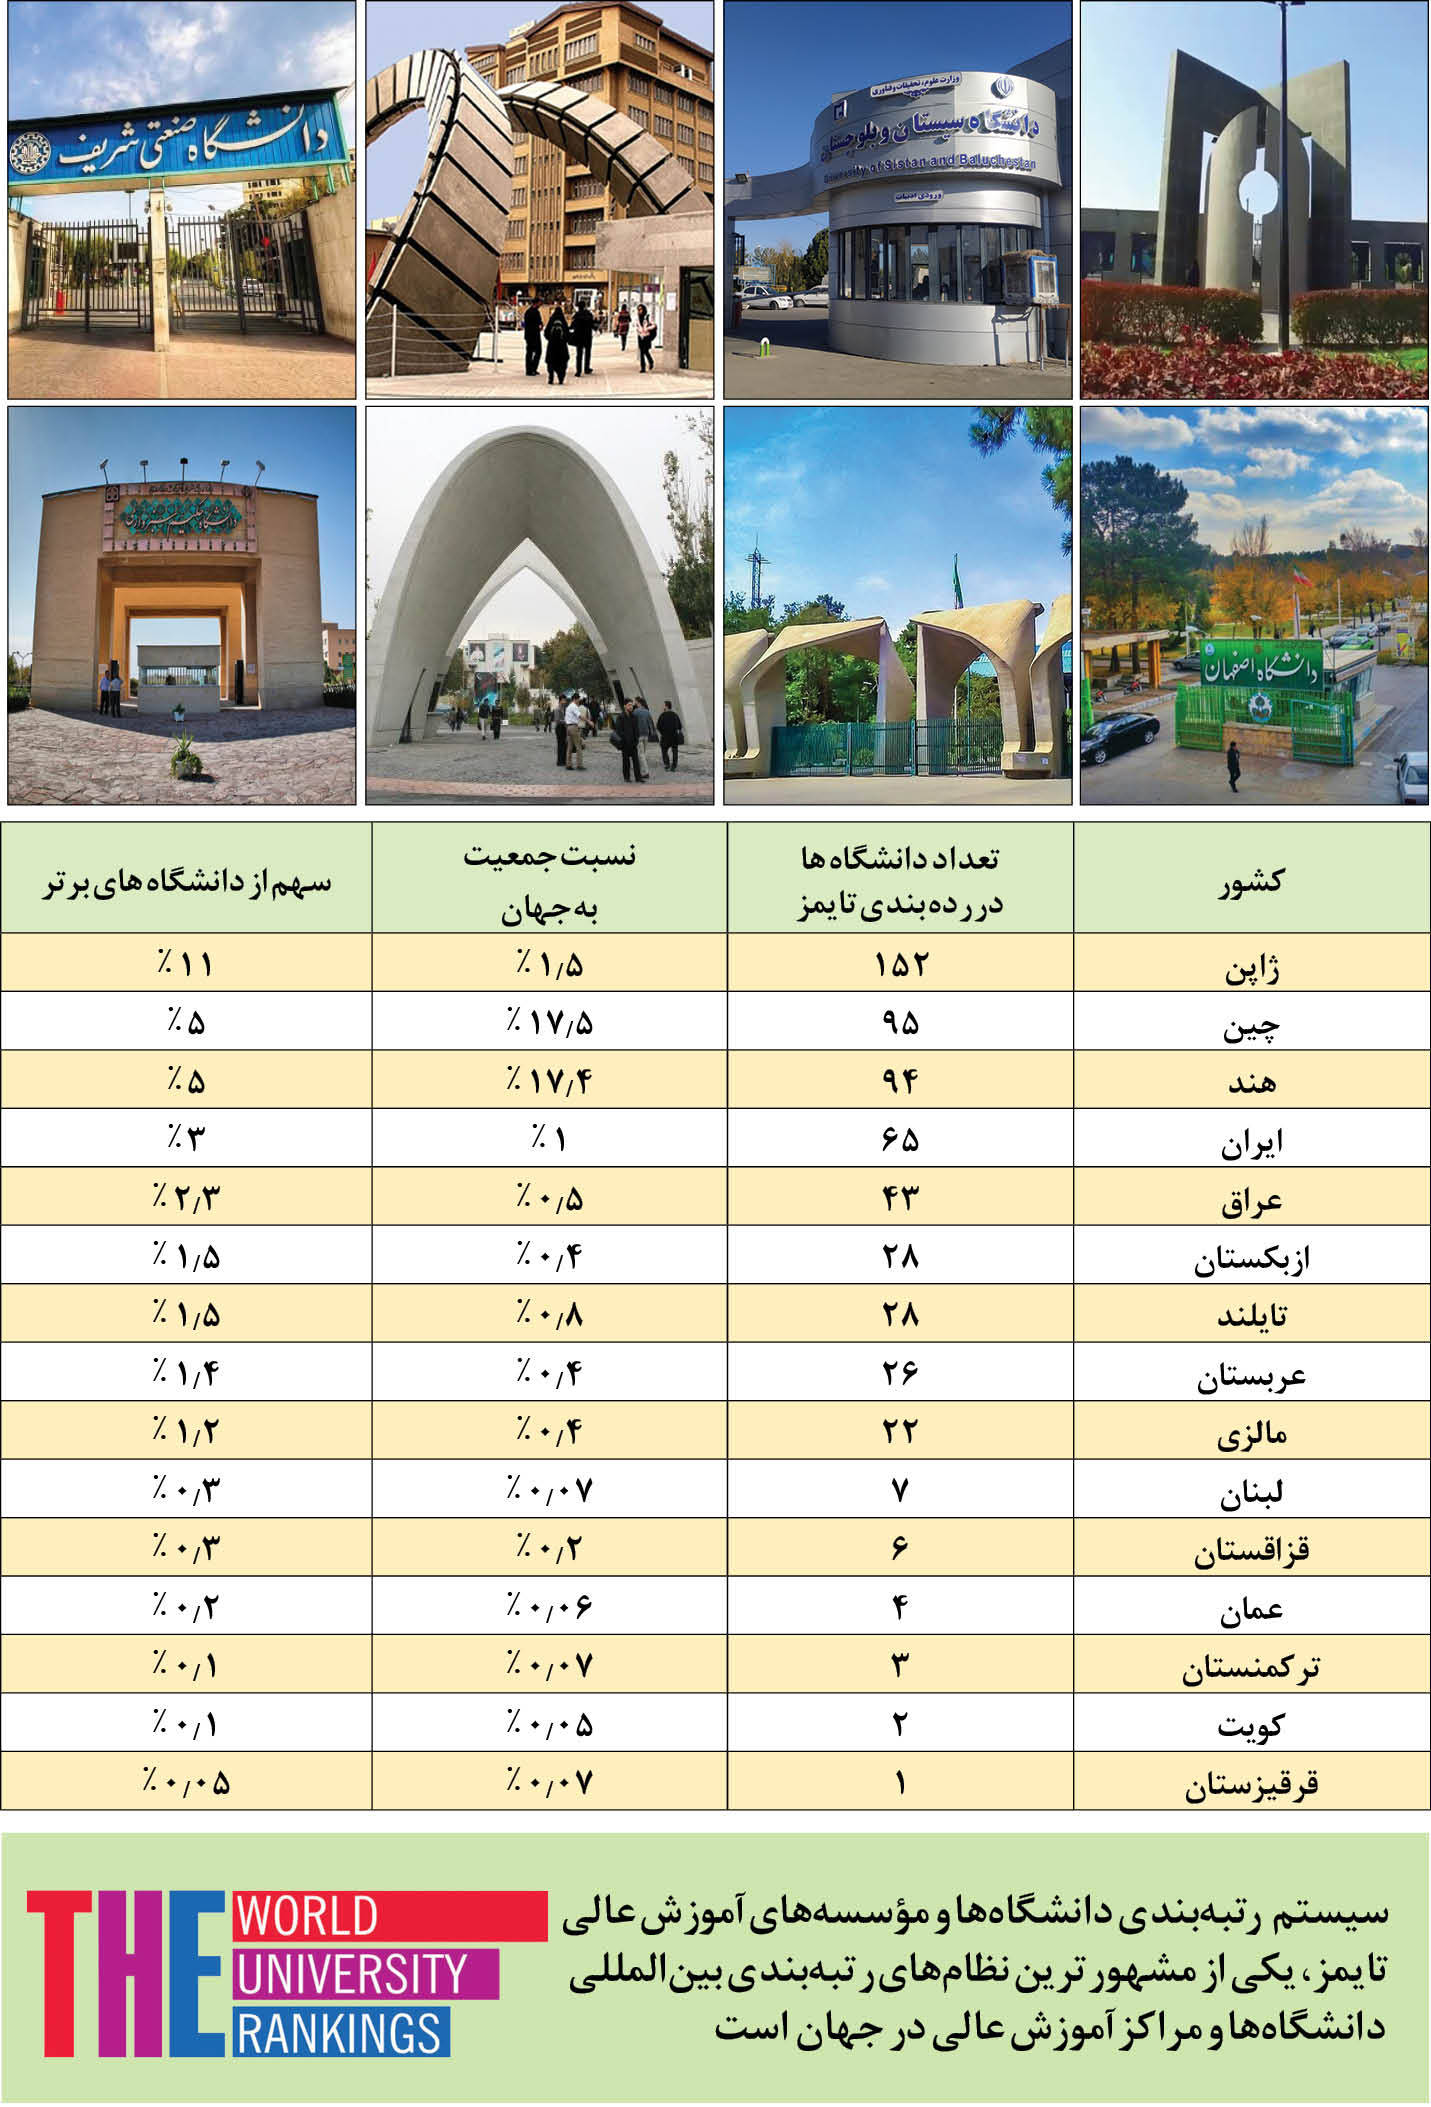 ایران؛ یک د رصد جمعیت، ۳ درصد دانشگاه های برتر جهان